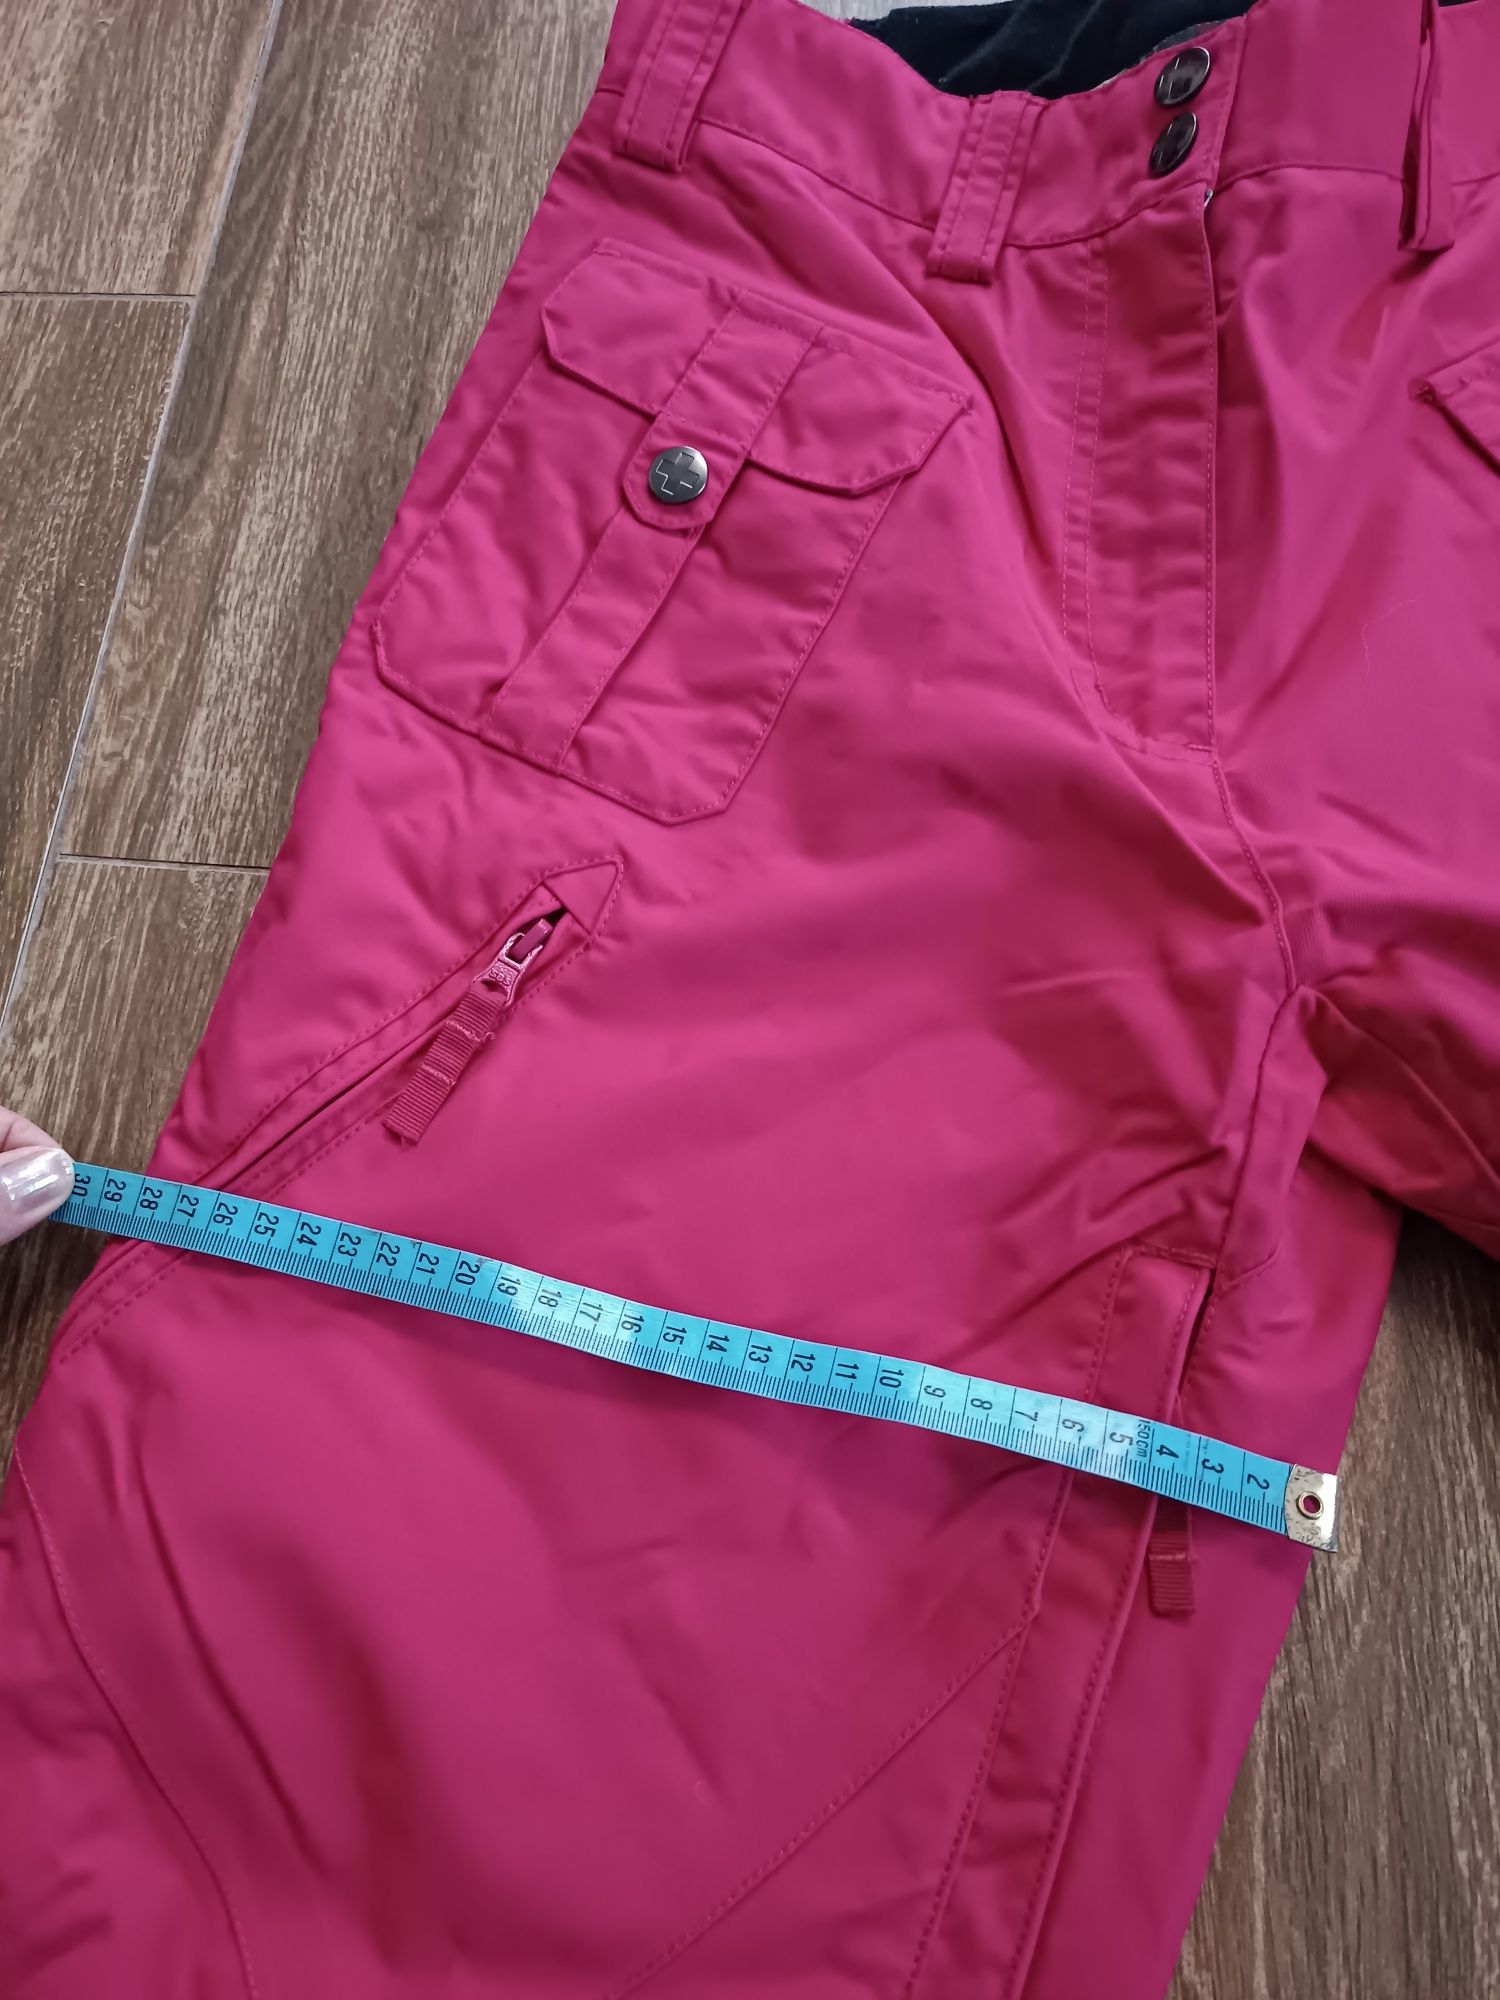 Alprausch Spodnie narciarskie rozmiar L różowe bez ocieplenia